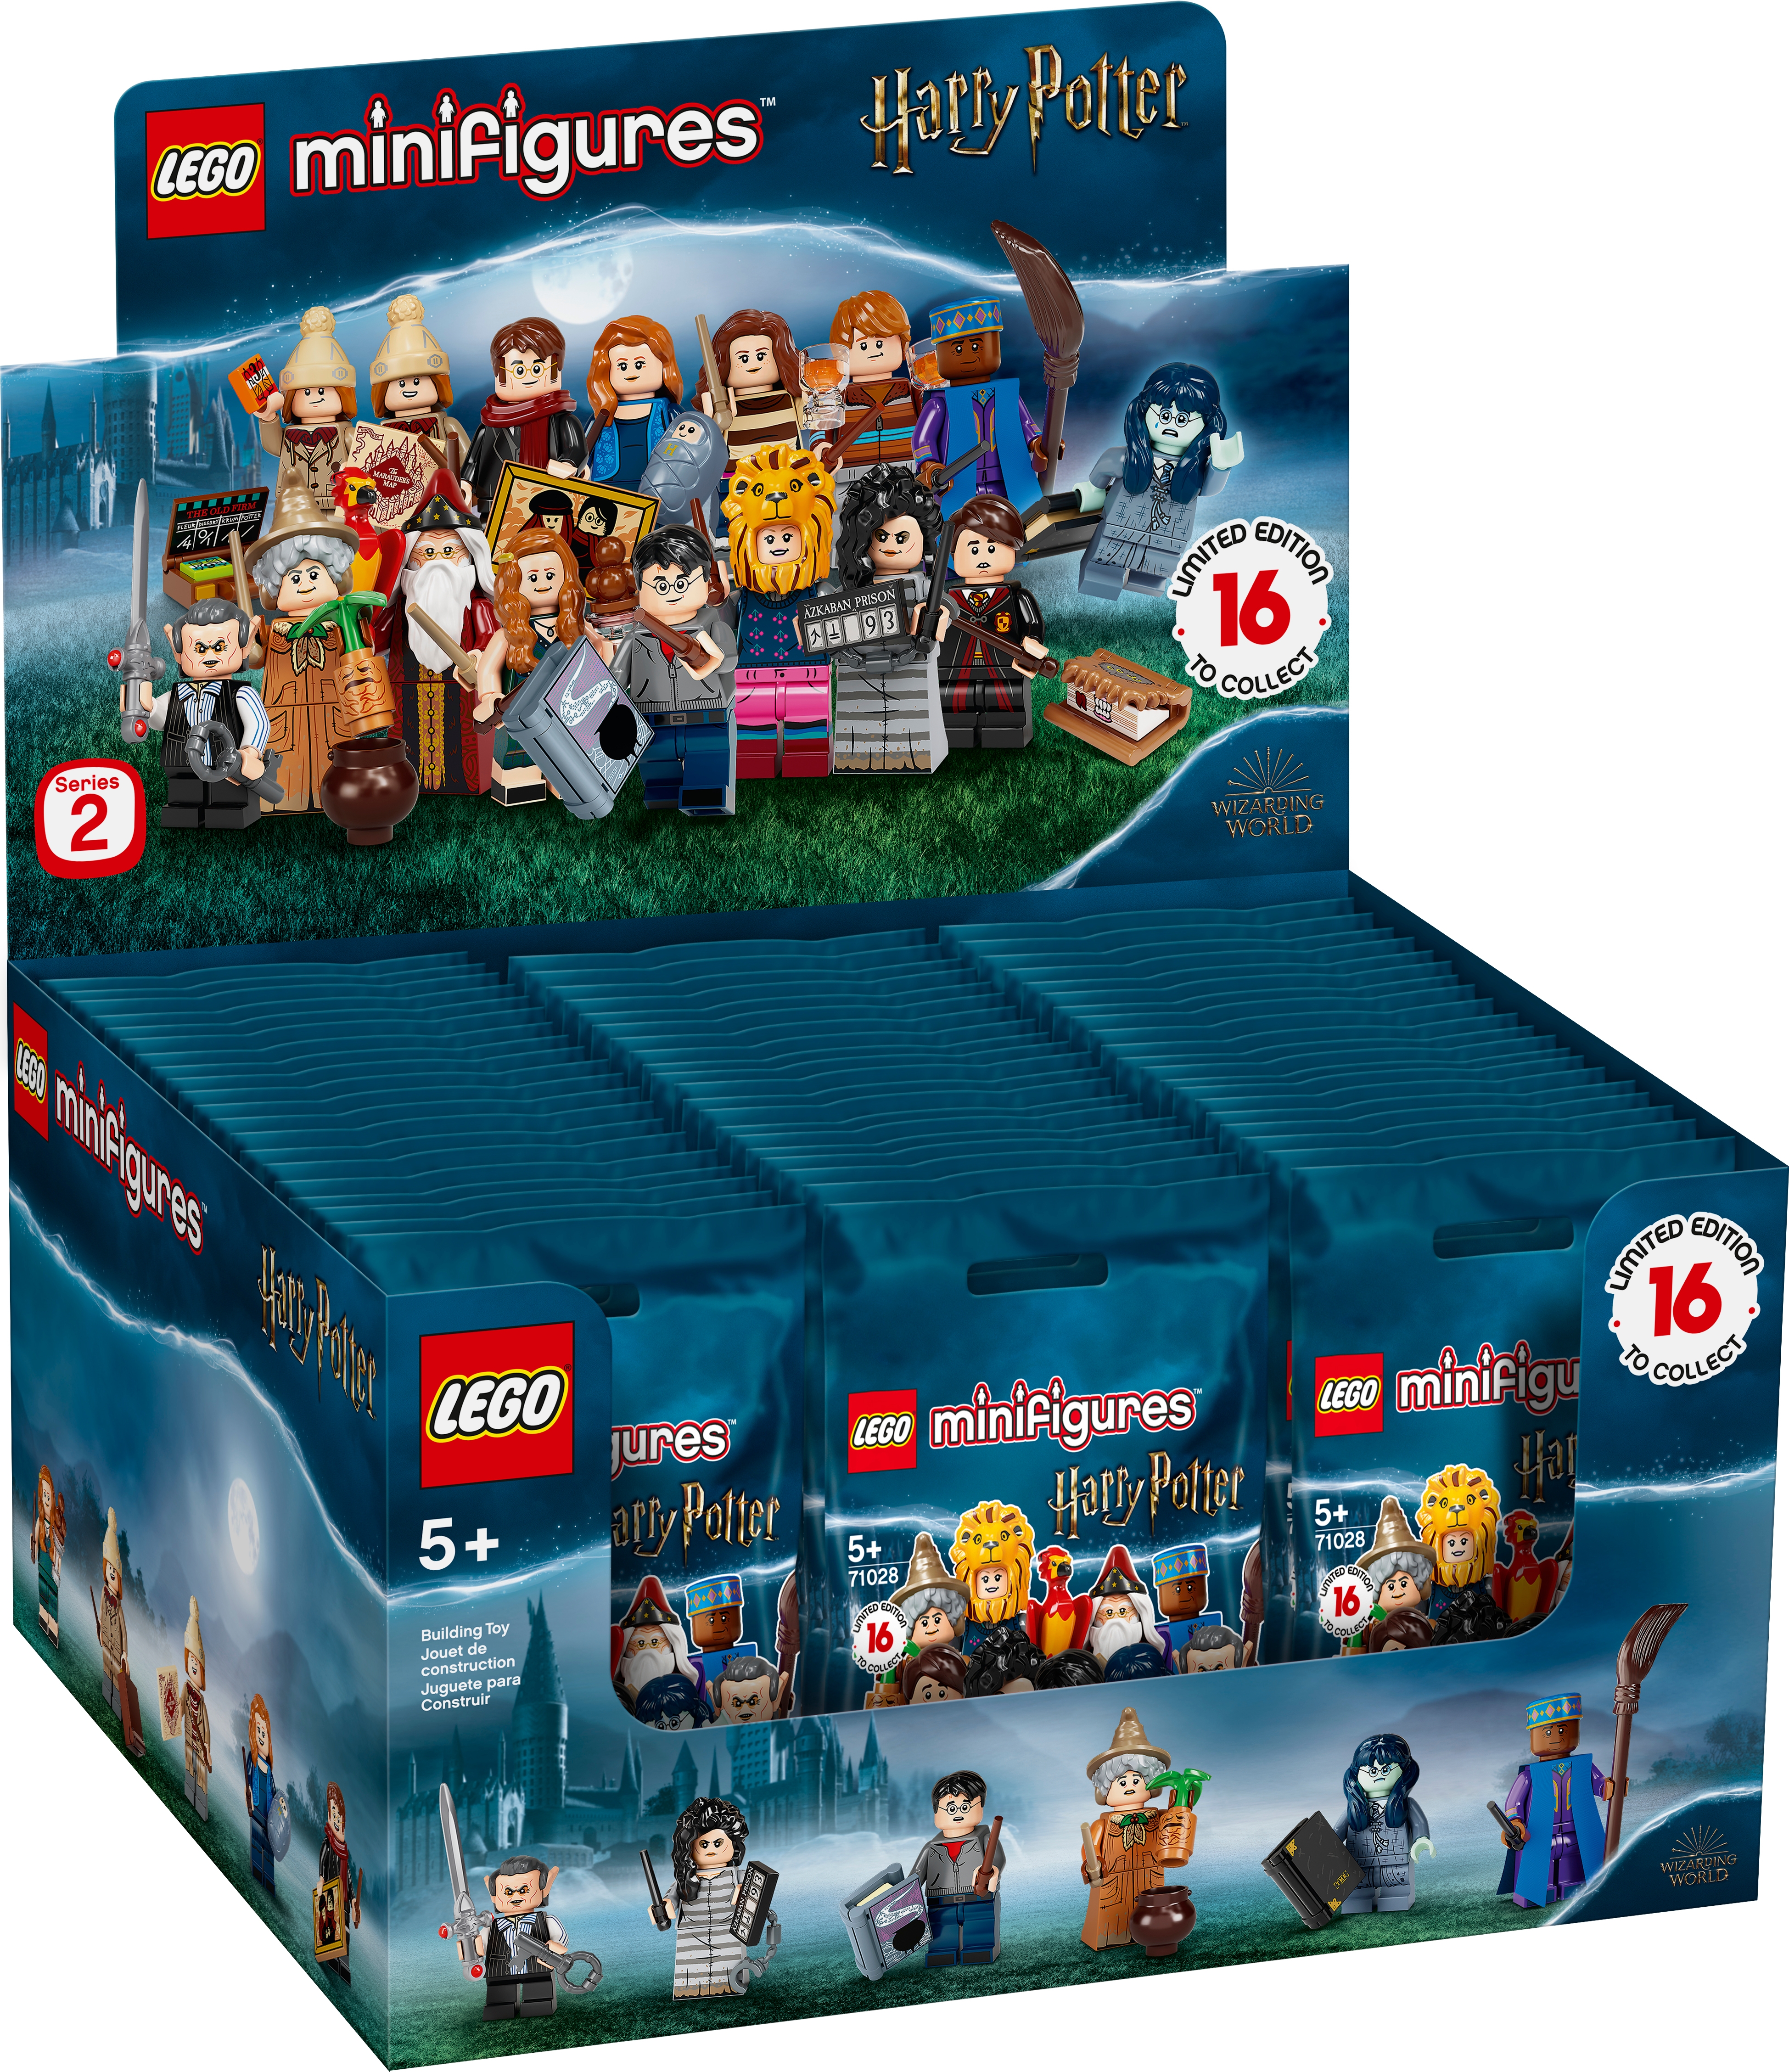 LEGO minifigures Harry Potter SERIE 2 71028 seleziona Scegli Proprie acquista 3 ottenere 4TH FREE 